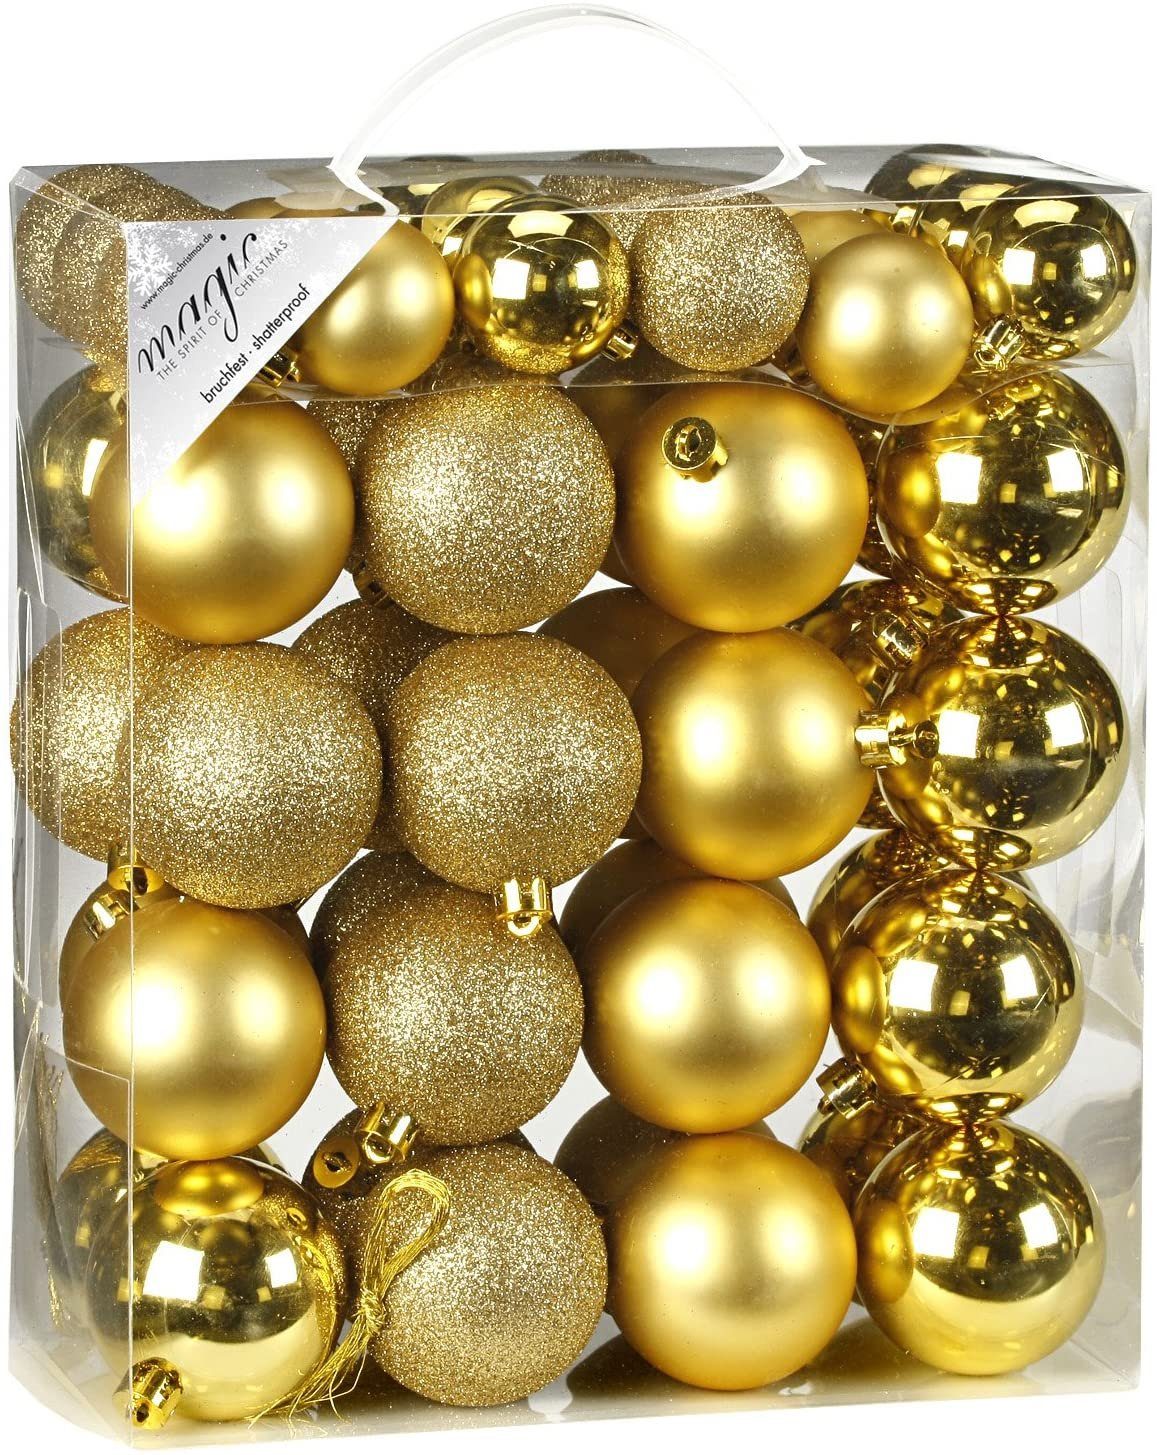 INGE-GLAS® Christbaumschmuck Inge's Weihnachtskugel 50 Stück 4-6 cm Gold, Kunststoff, Baumdekoration, Baumschmuck, Weihnachtsdekoration, Kugel-Set